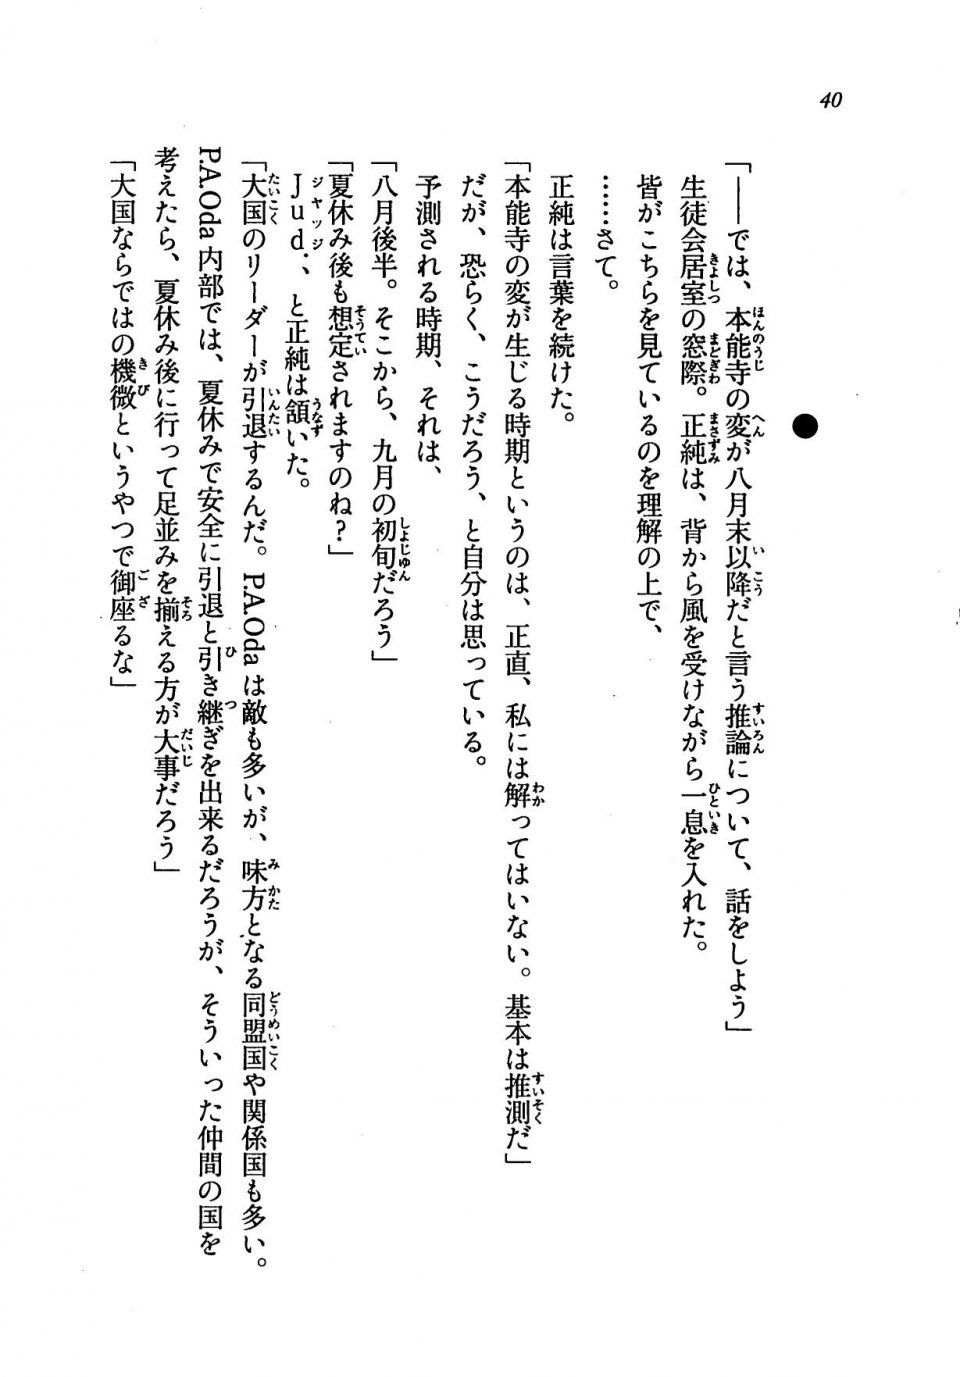 Kyoukai Senjou no Horizon LN Vol 19(8A) - Photo #40